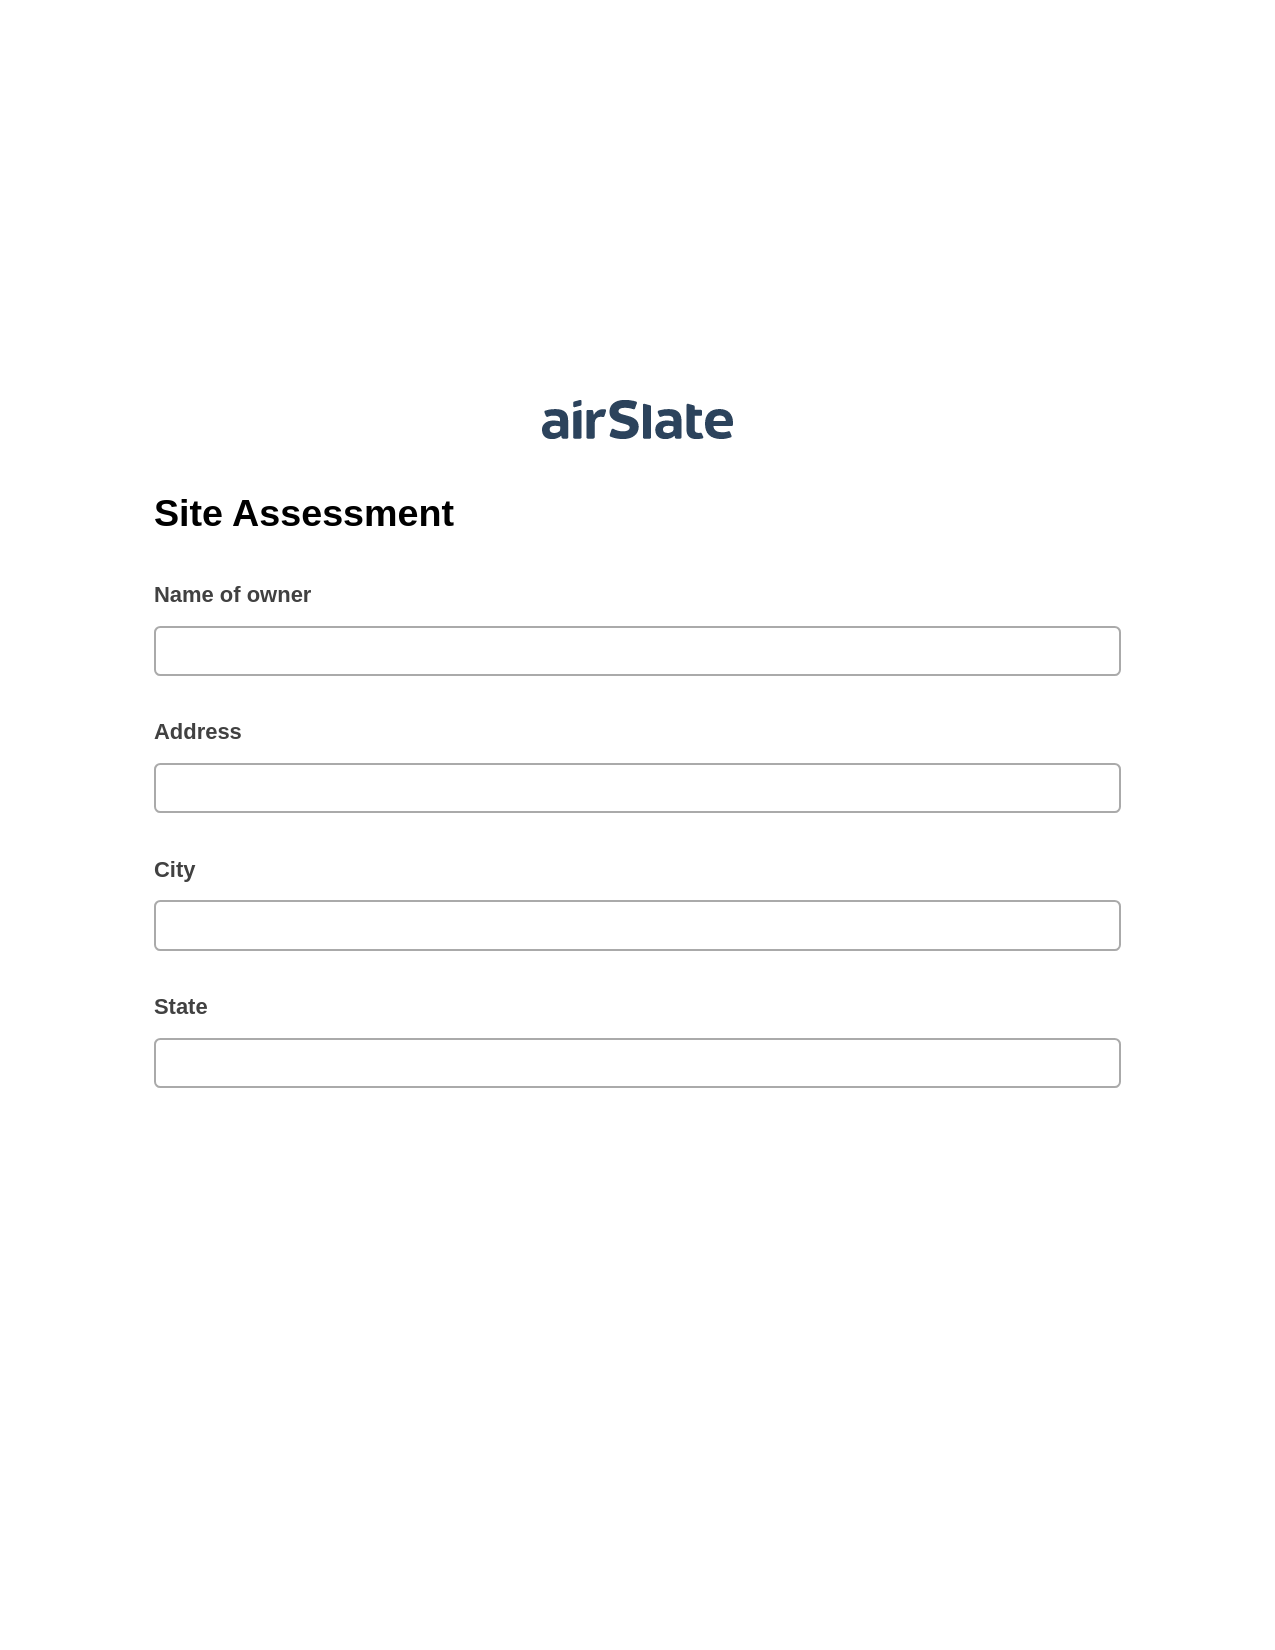 Site Assessment Pre-fill from Excel Spreadsheet Bot, Create slate bot, Webhook Postfinish Bot